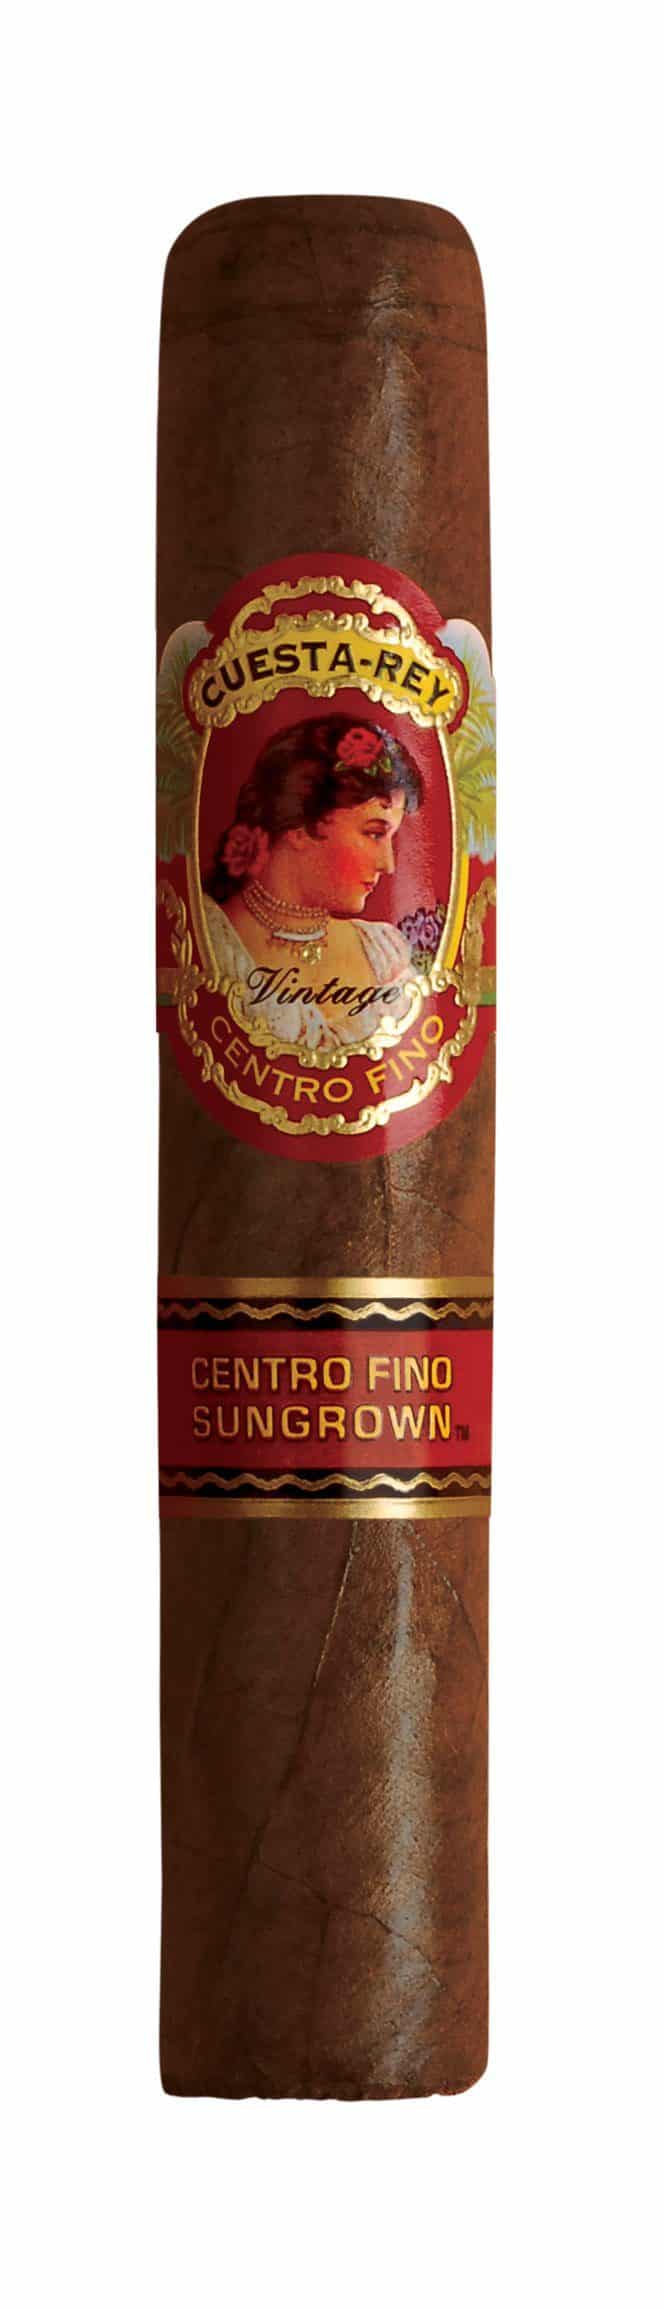 cuesta rey centro fino robusto number 7 single cigar